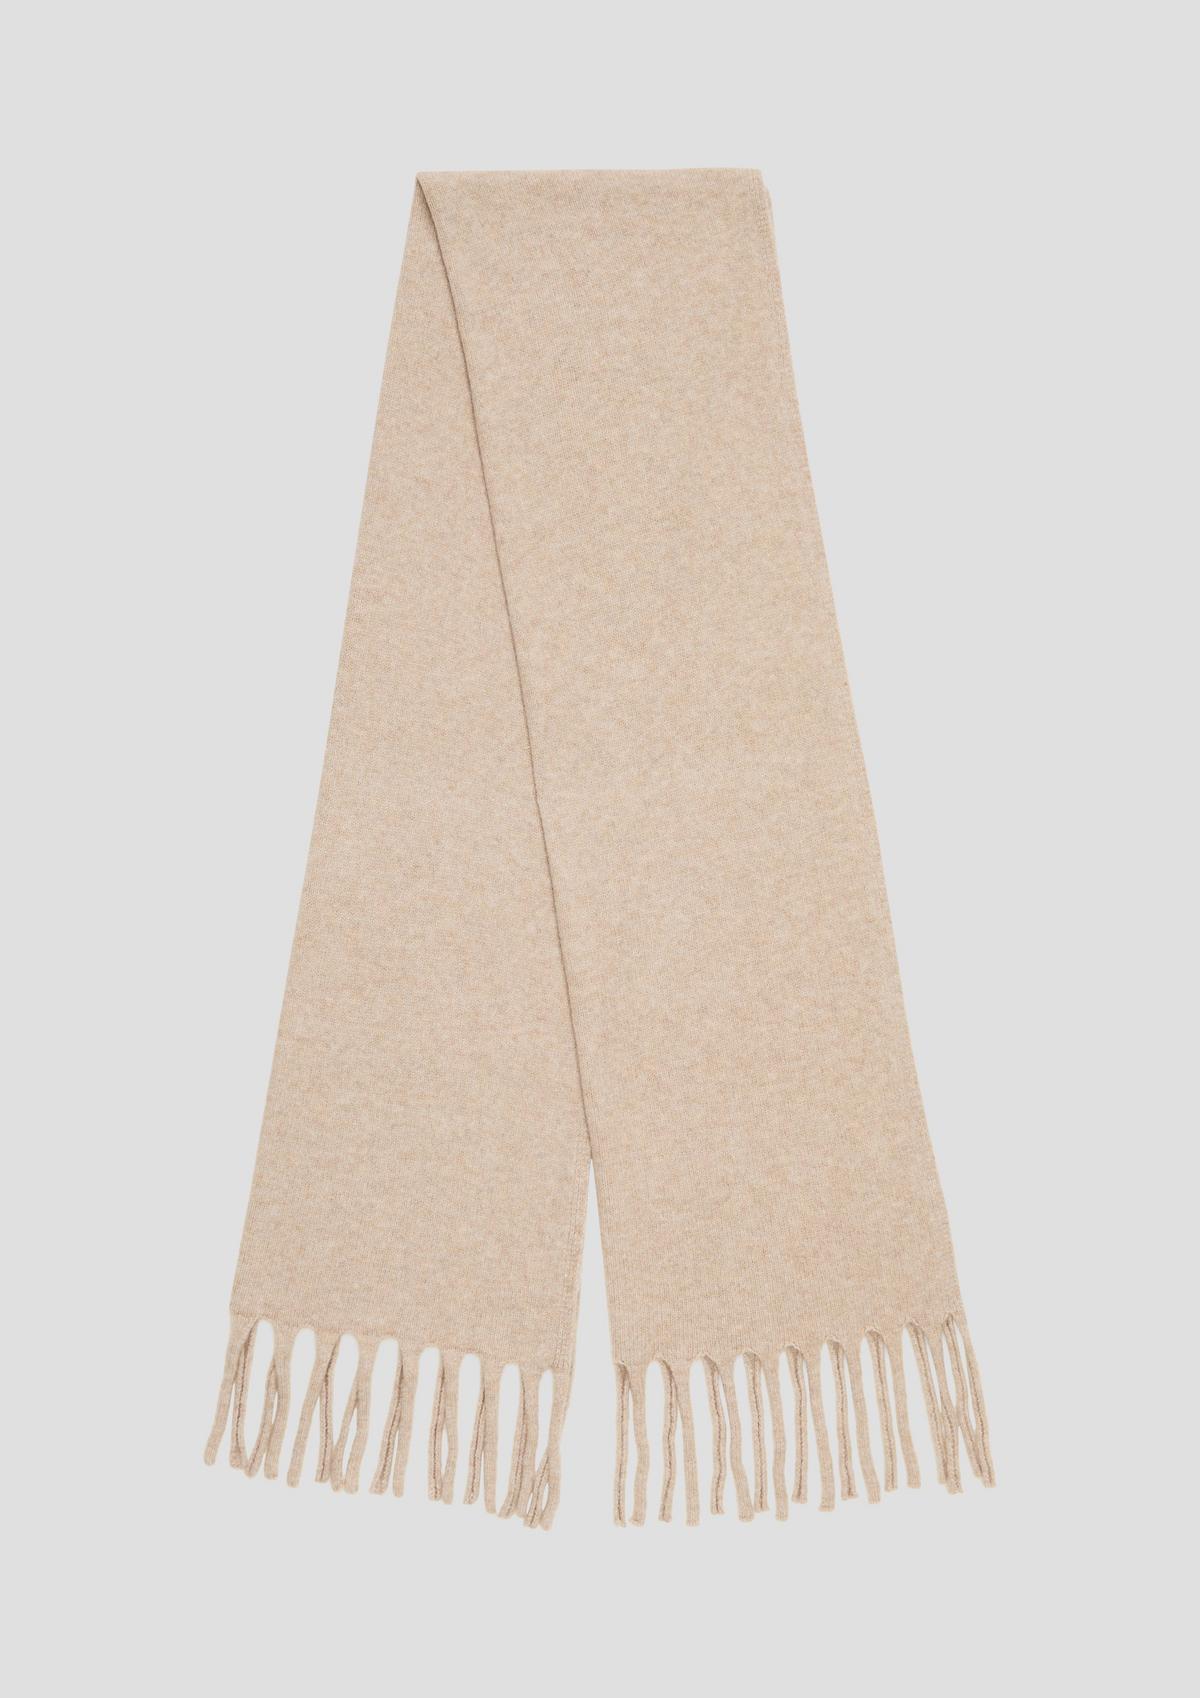 Gebreide sjaal van een katoenmix